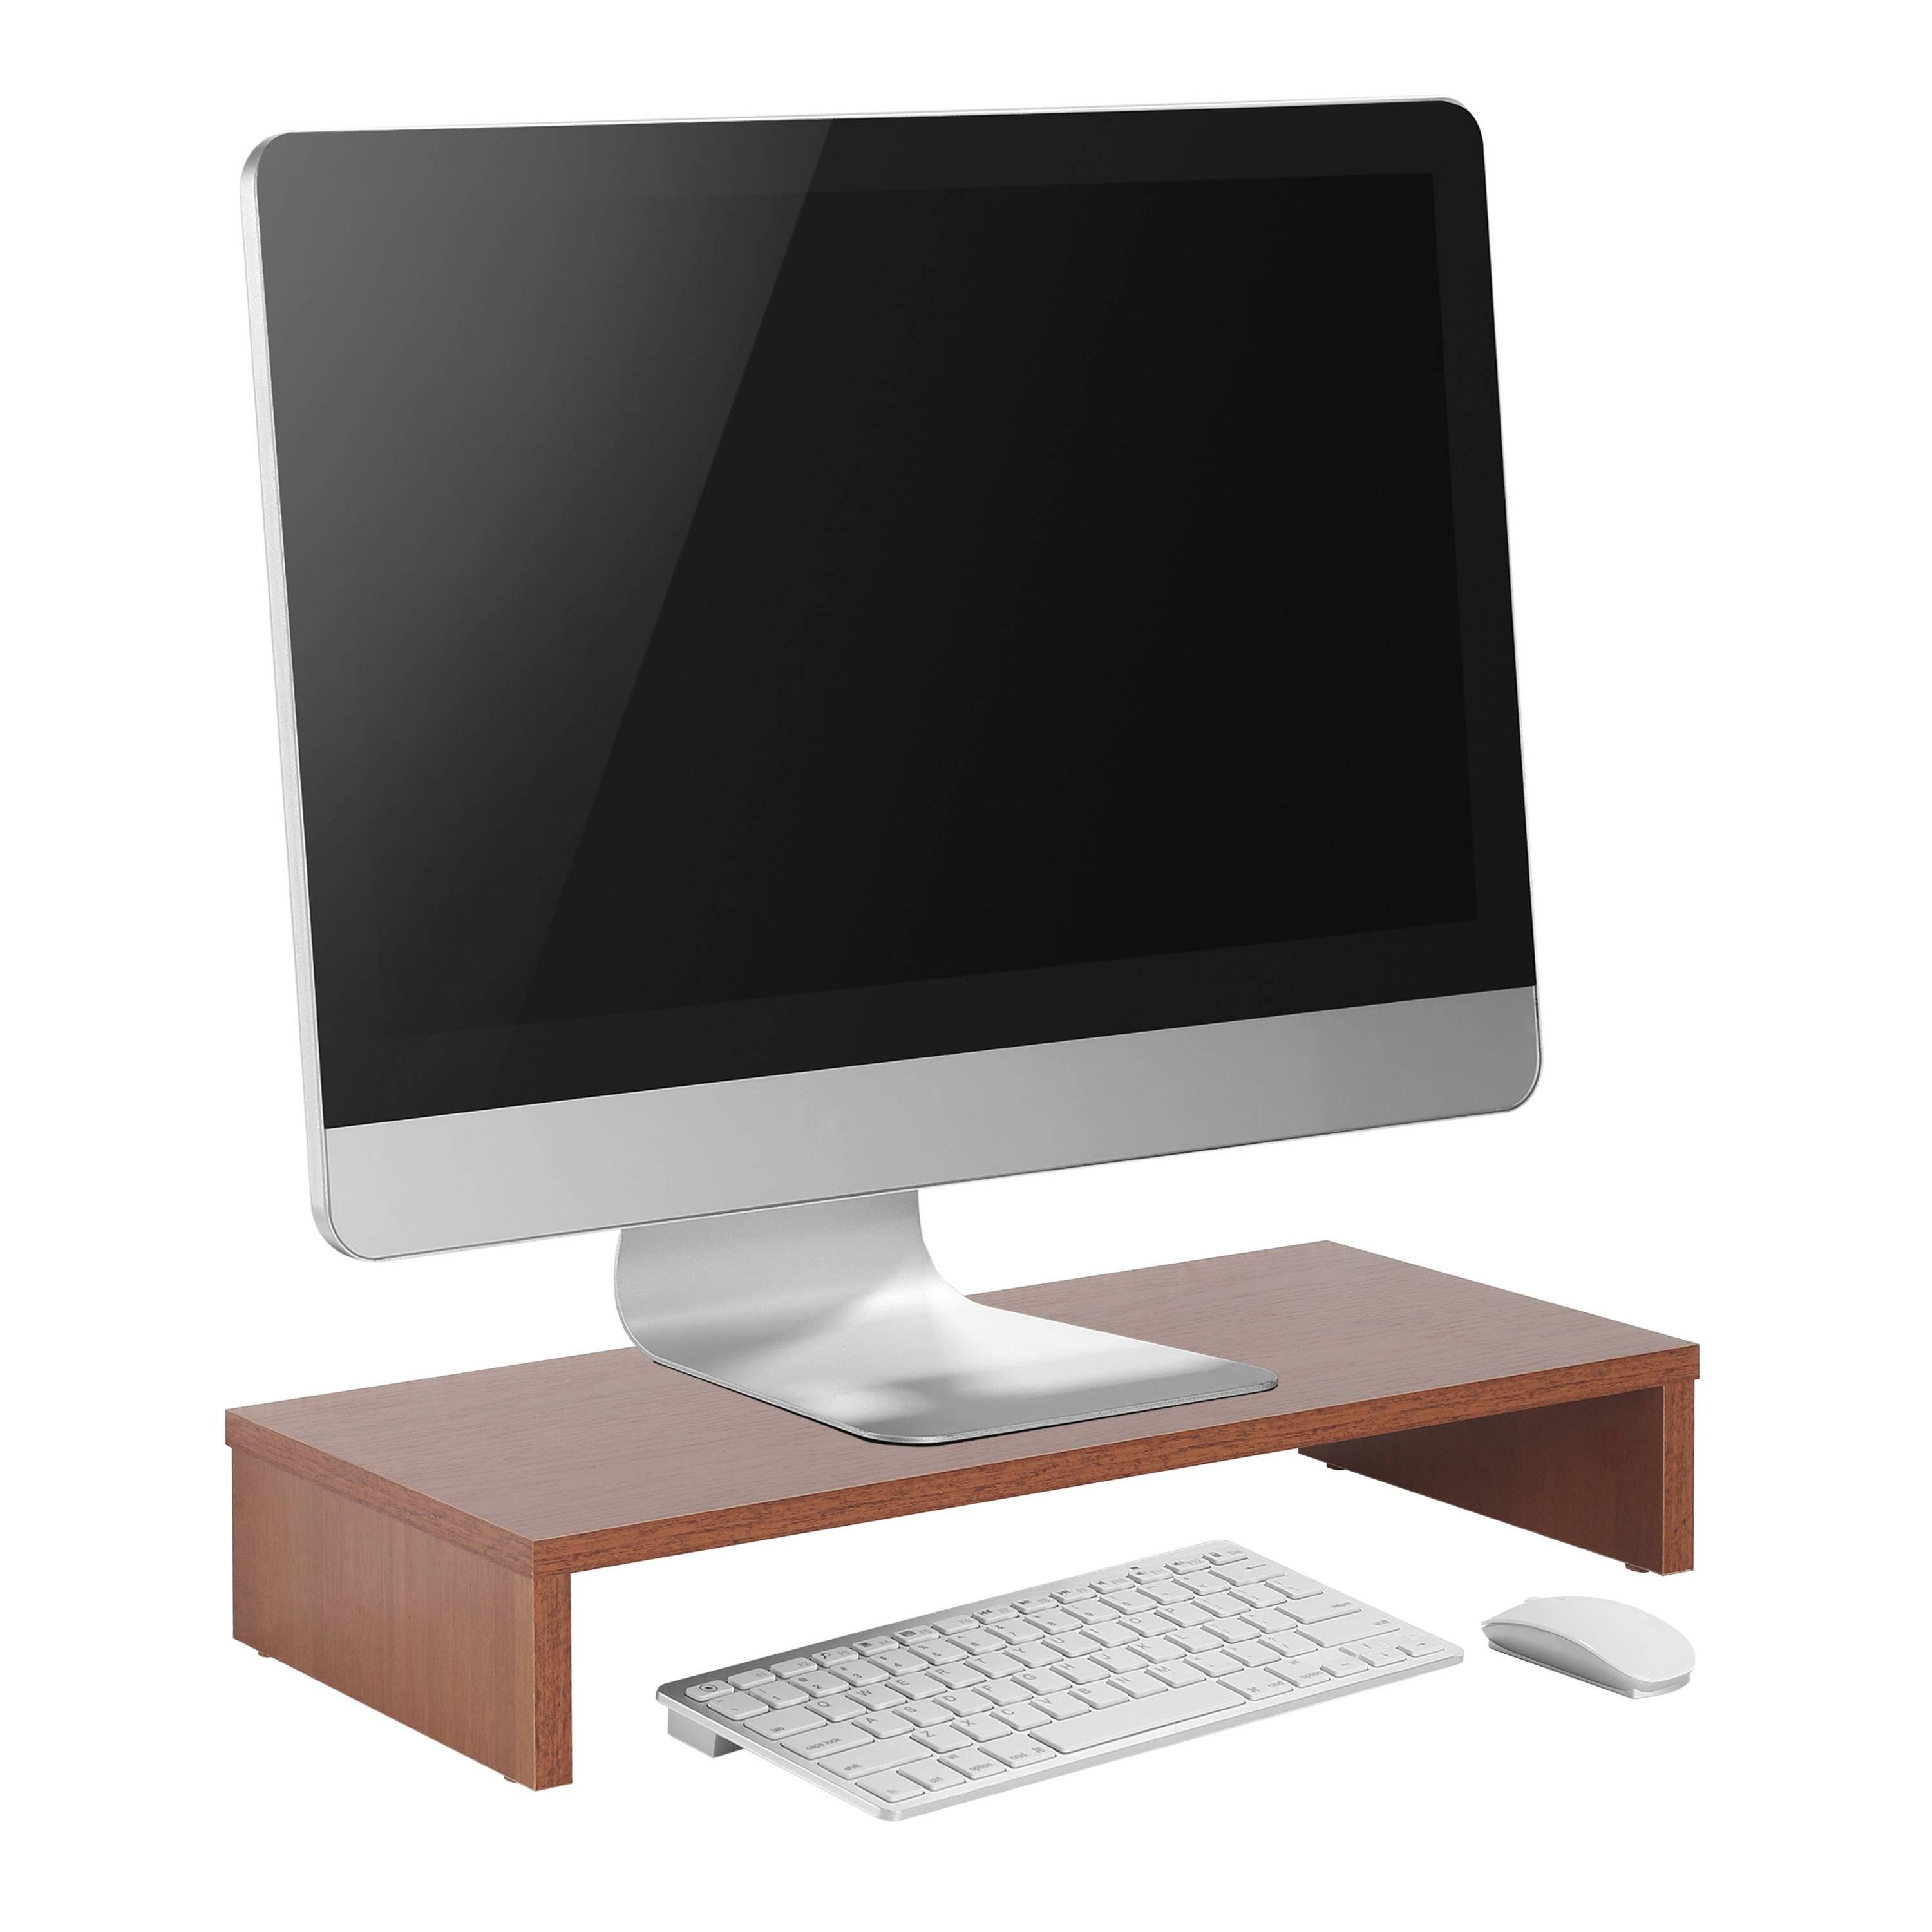 RICOO Schreibtischaufsatz FS0113-ER, Monitorständer Schreibtisch Eiche-Rustikal Tisch Monitorerhöhung Bildschirm Aufsatz